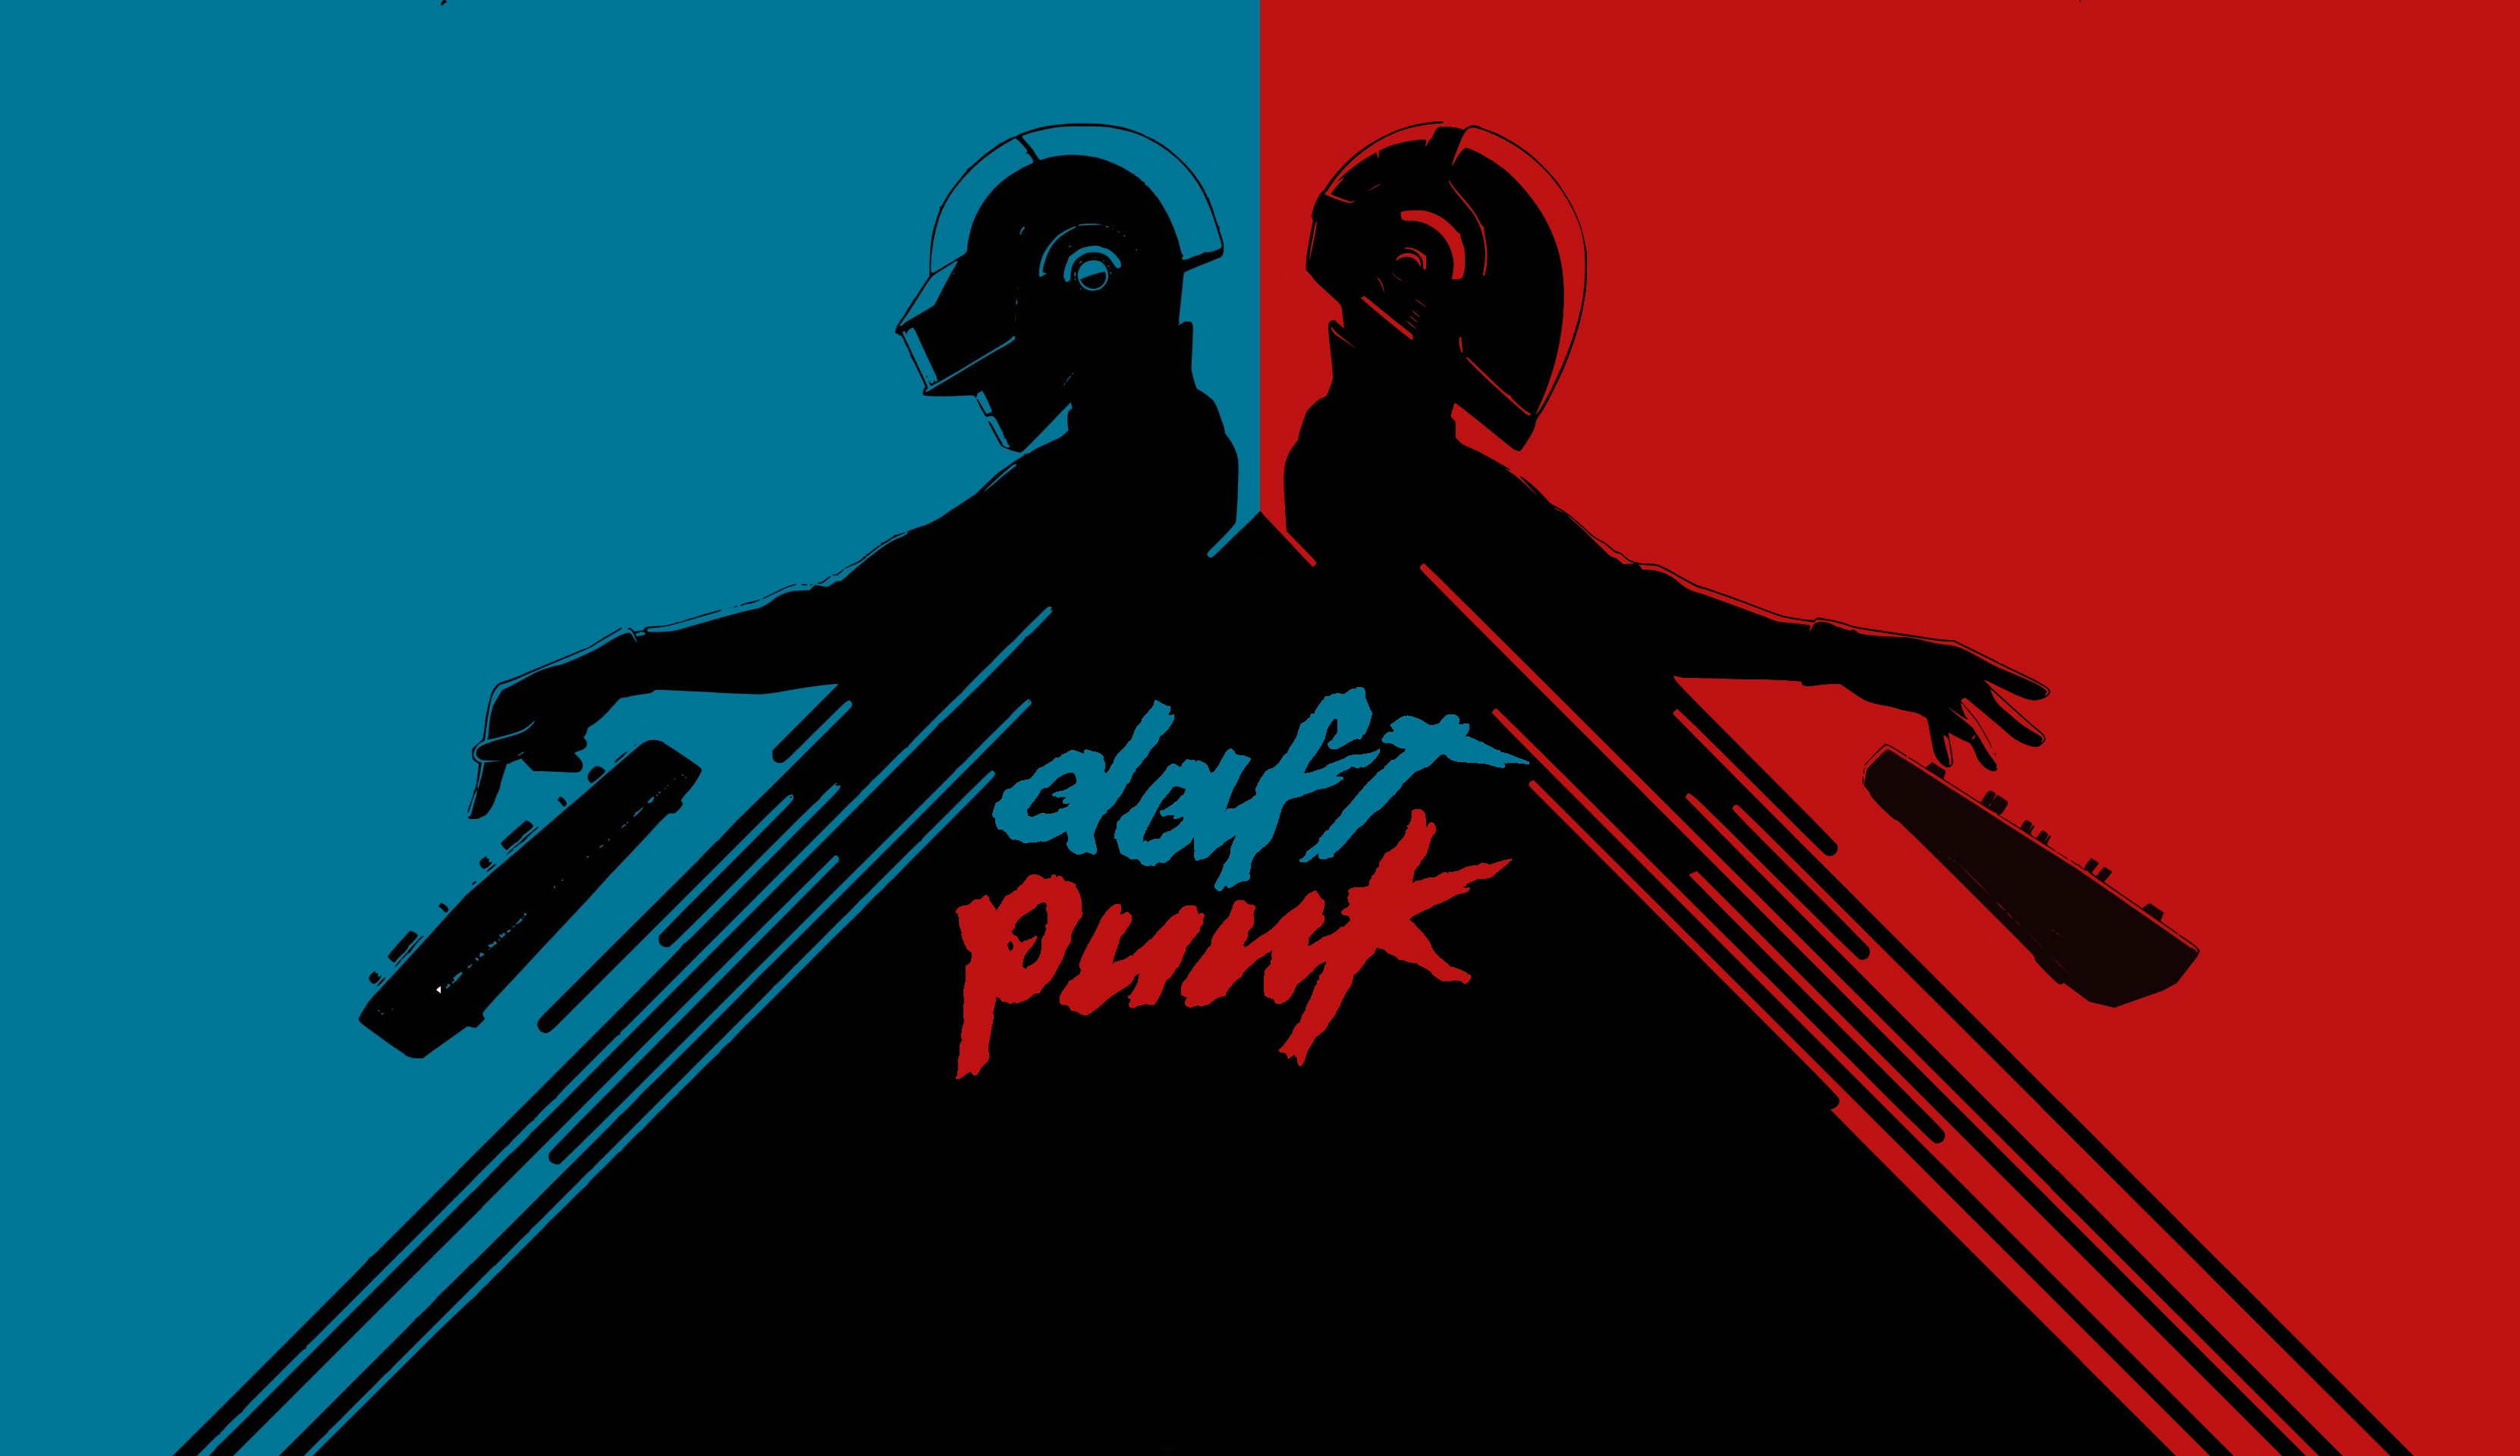 Daft Punk Wallpaper 4K Electronic music duo